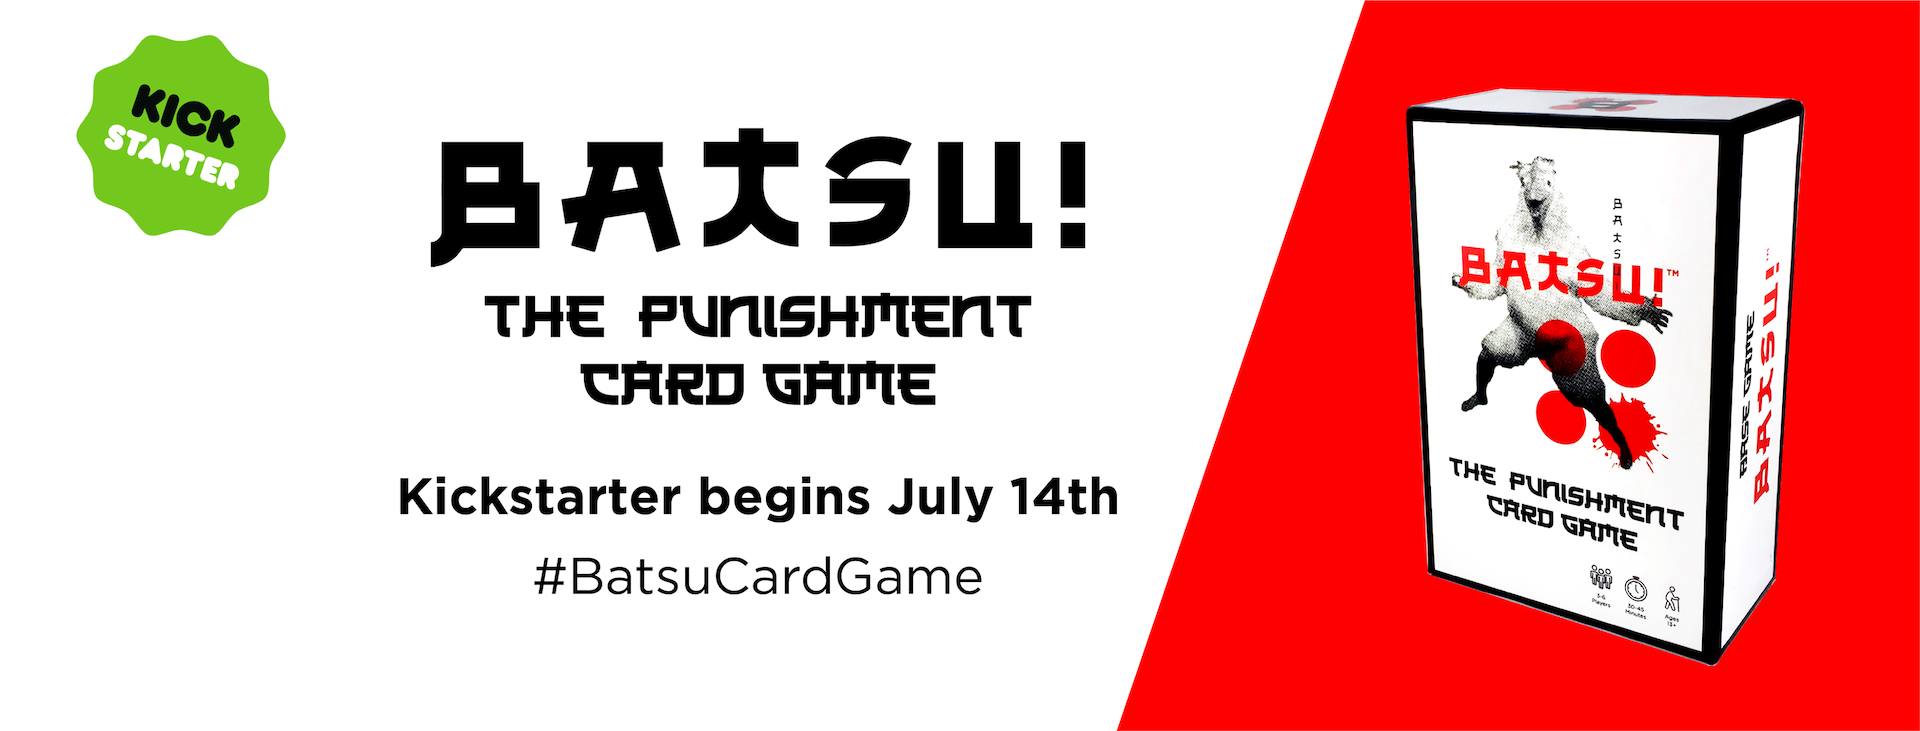 Batsu Card Game Kickstarter